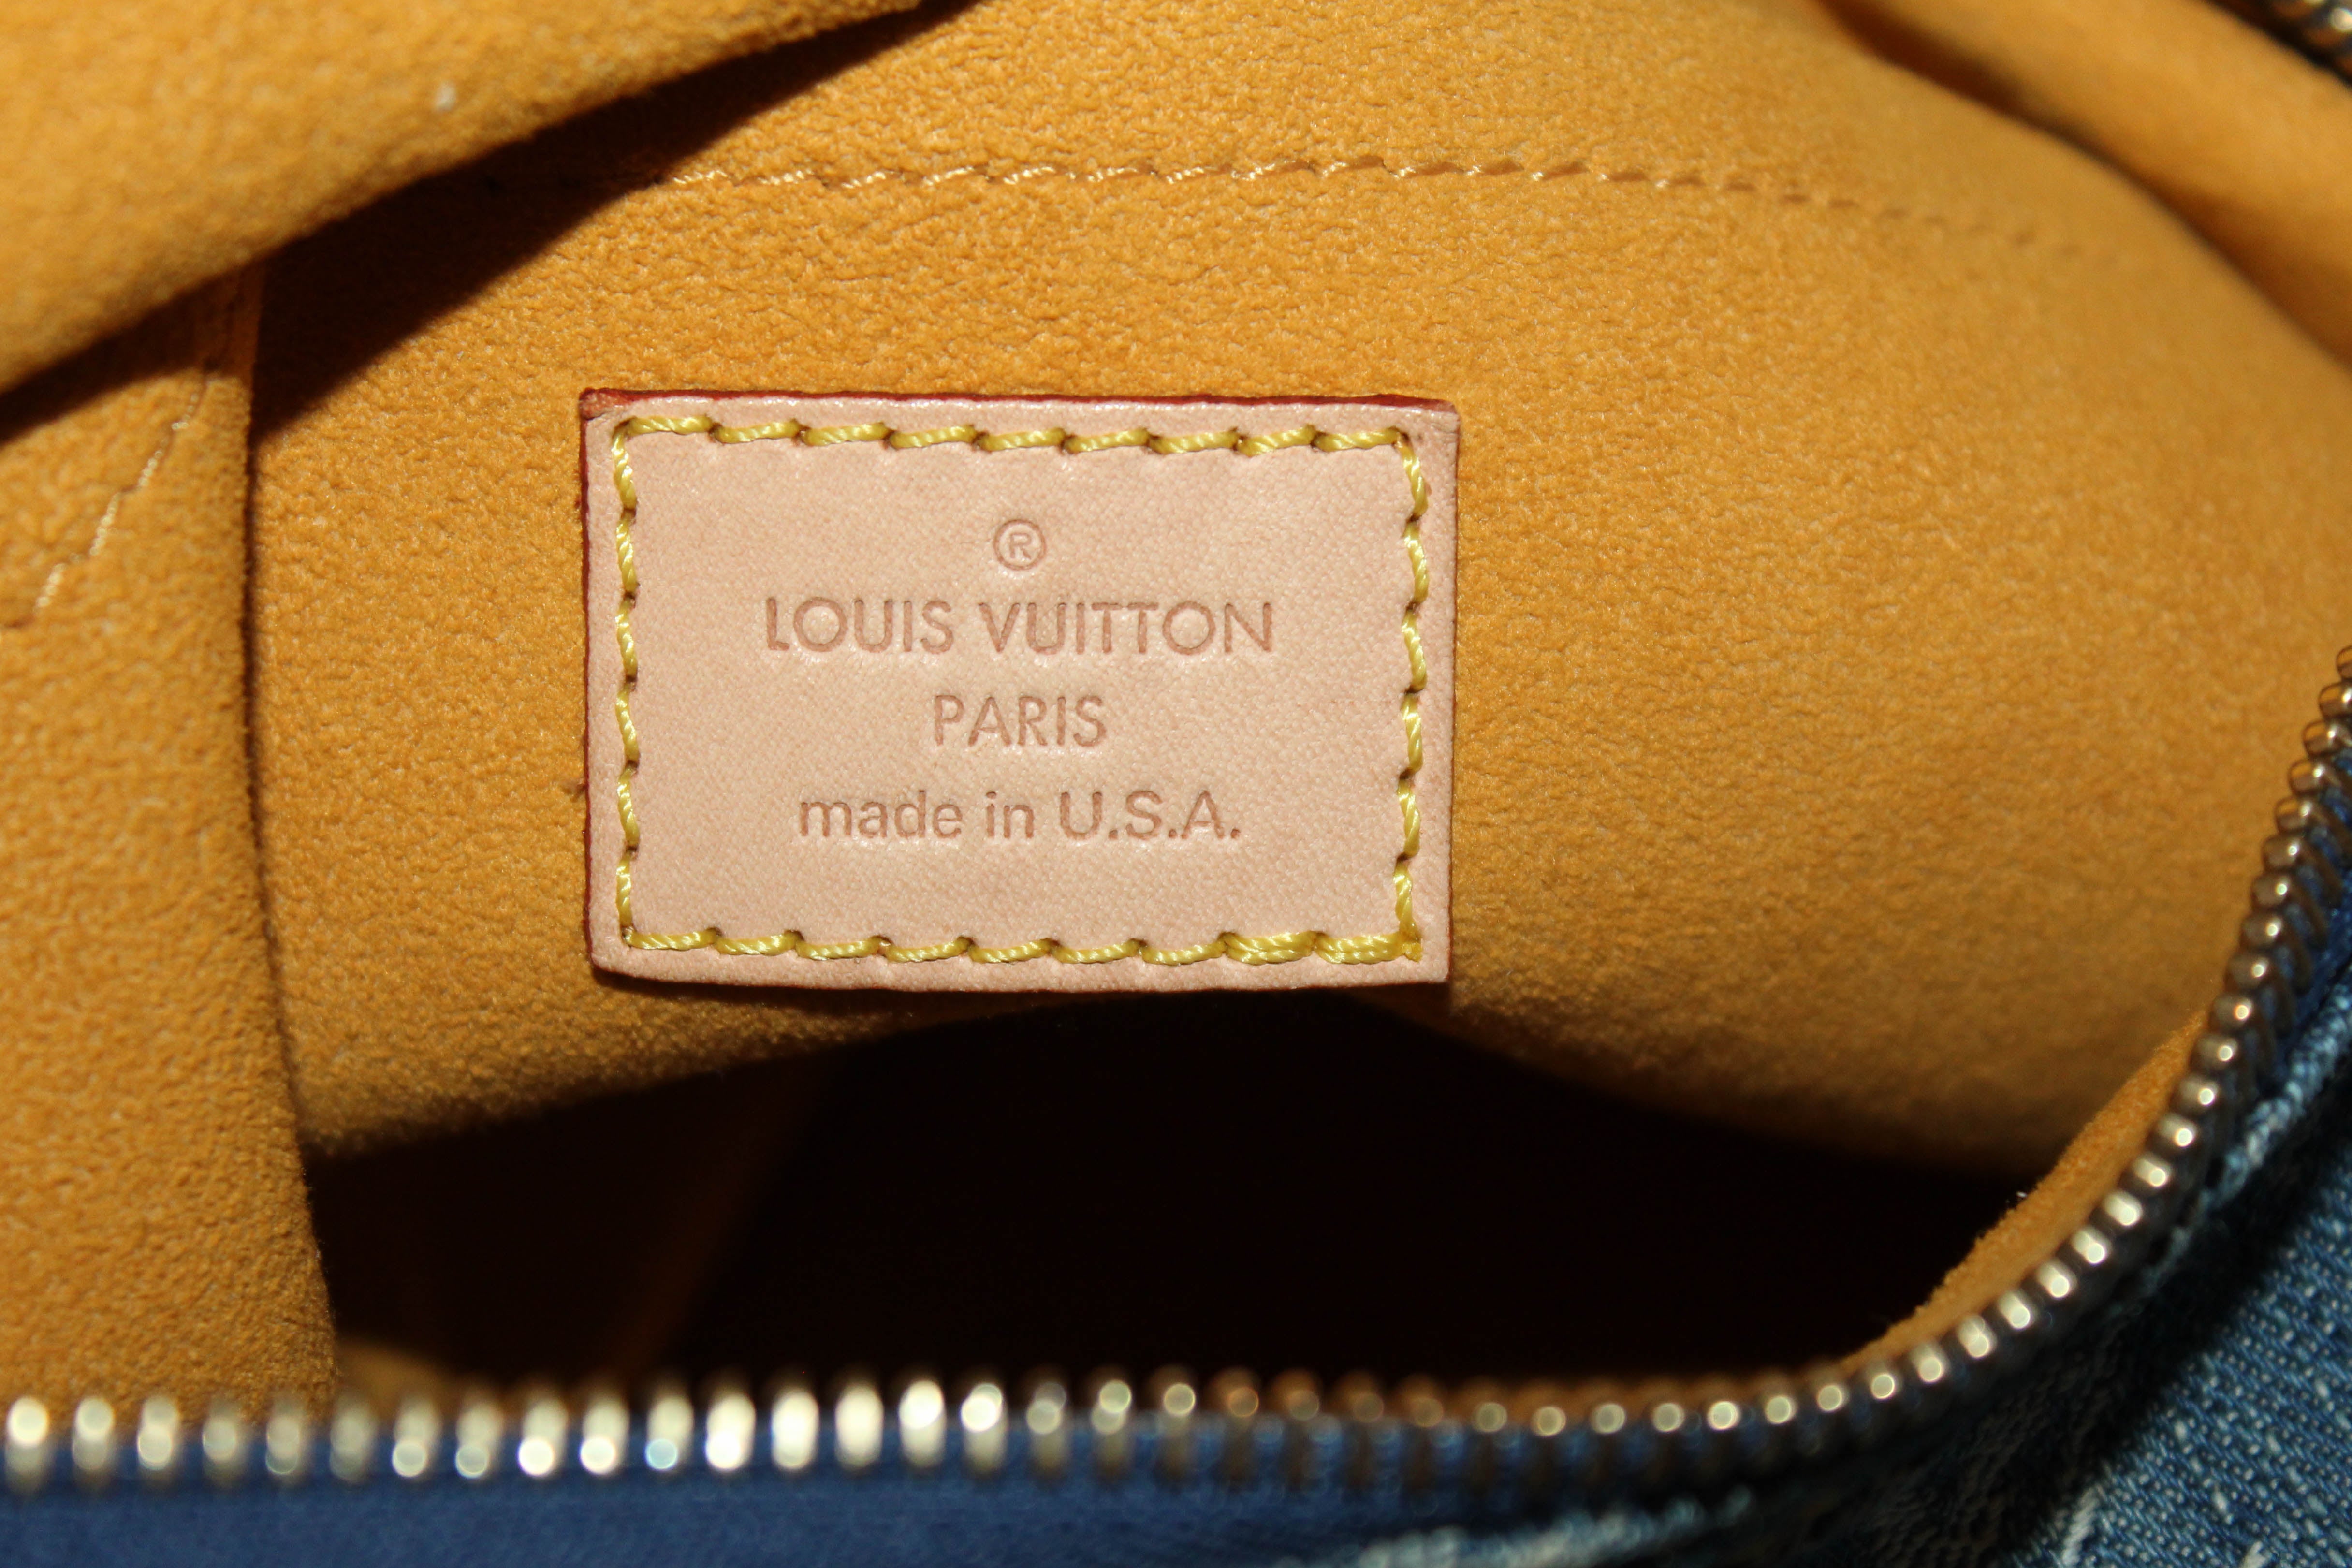 Authentic Louis Vuitton Blue Denim Monogram Baggy GM Shoulder Bag